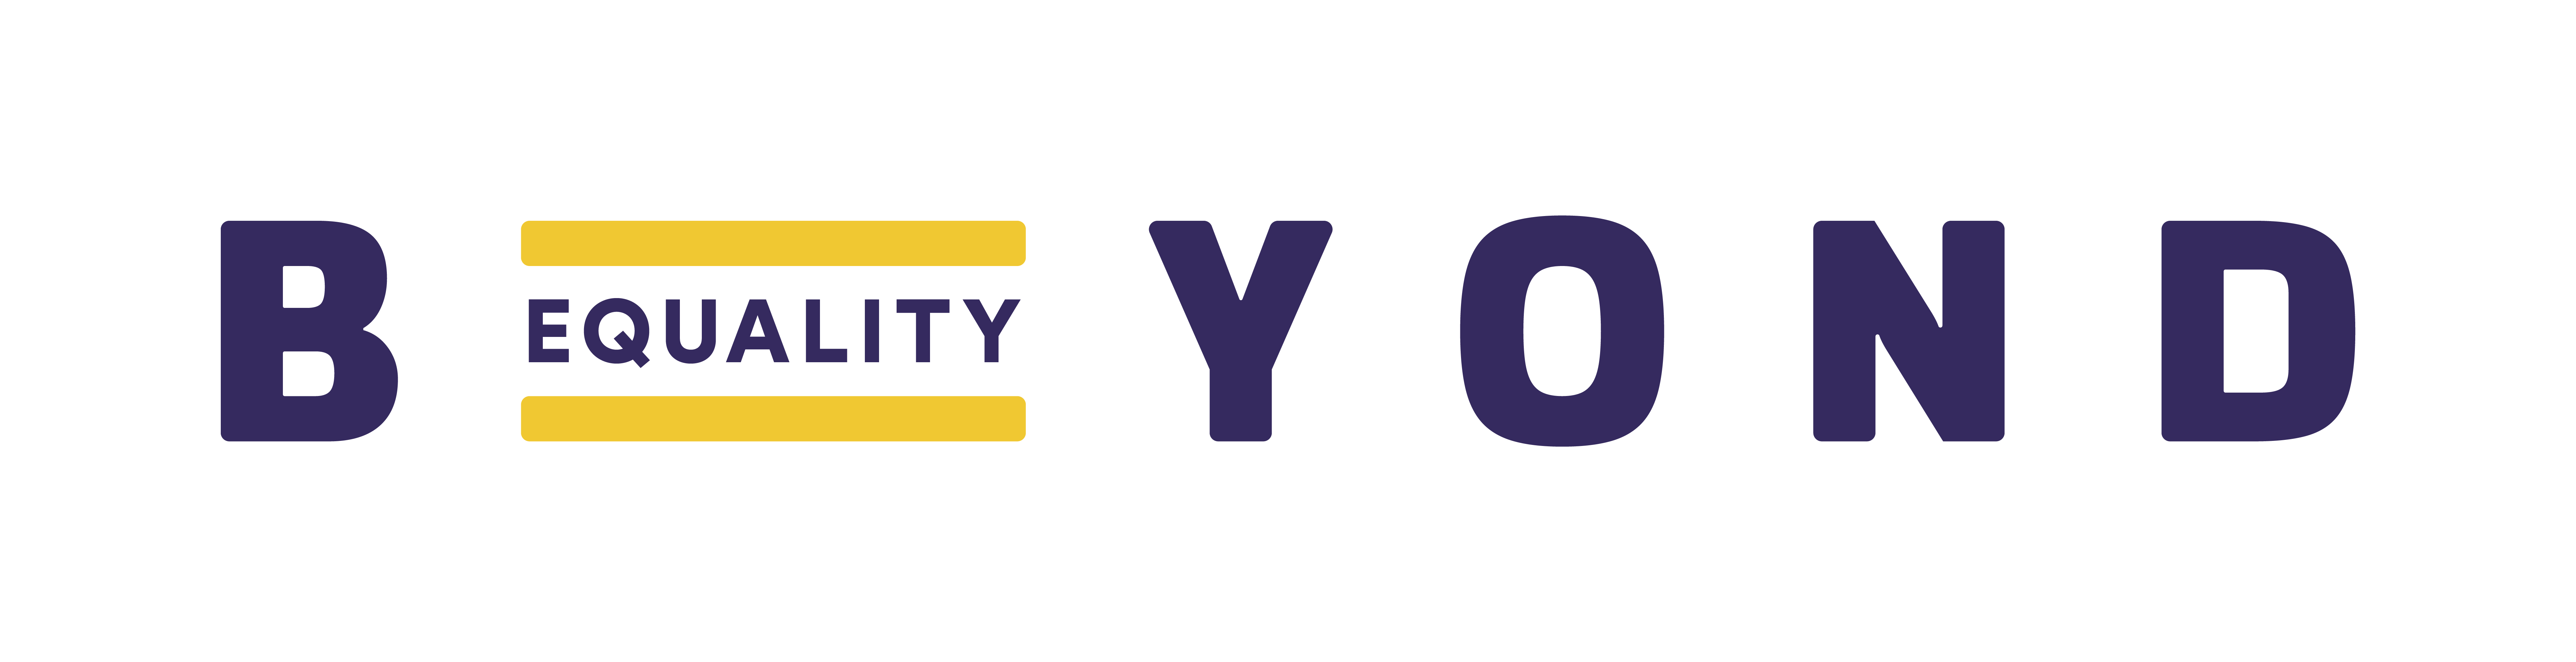 Beyond_Equality_logo.original